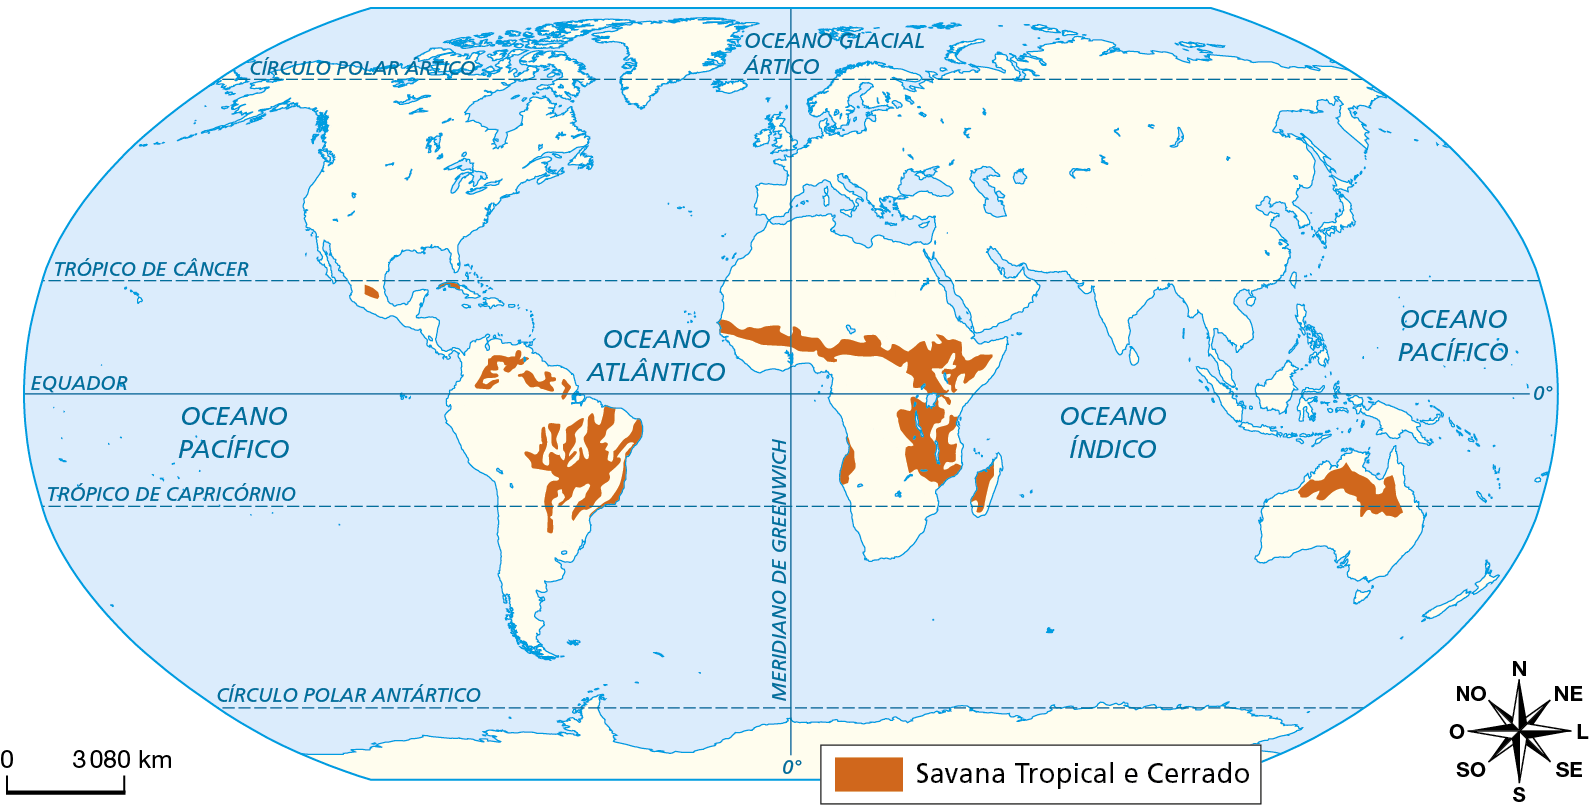 Mapa. Planisfério: localização das áreas recobertas por savanas tropicais e cerrado. Planisfério representando a ocorrência de savanas tropicais e cerrado nos continentes, por meio de manchas alaranjadas. Savana Tropical e Cerrado: porção central, norte e parte da costa leste da América do Sul; pequena mancha no sul da América do Norte; faixa no centro do continente africano na direção leste-oeste, no sudoeste da África e na ilha de Madagascar e pequeno trecho no sudoeste da África; porção norte da Austrália, na Oceania. À direita, a rosa dos ventos e à esquerda escala de 0 a 3.080 quilômetros.